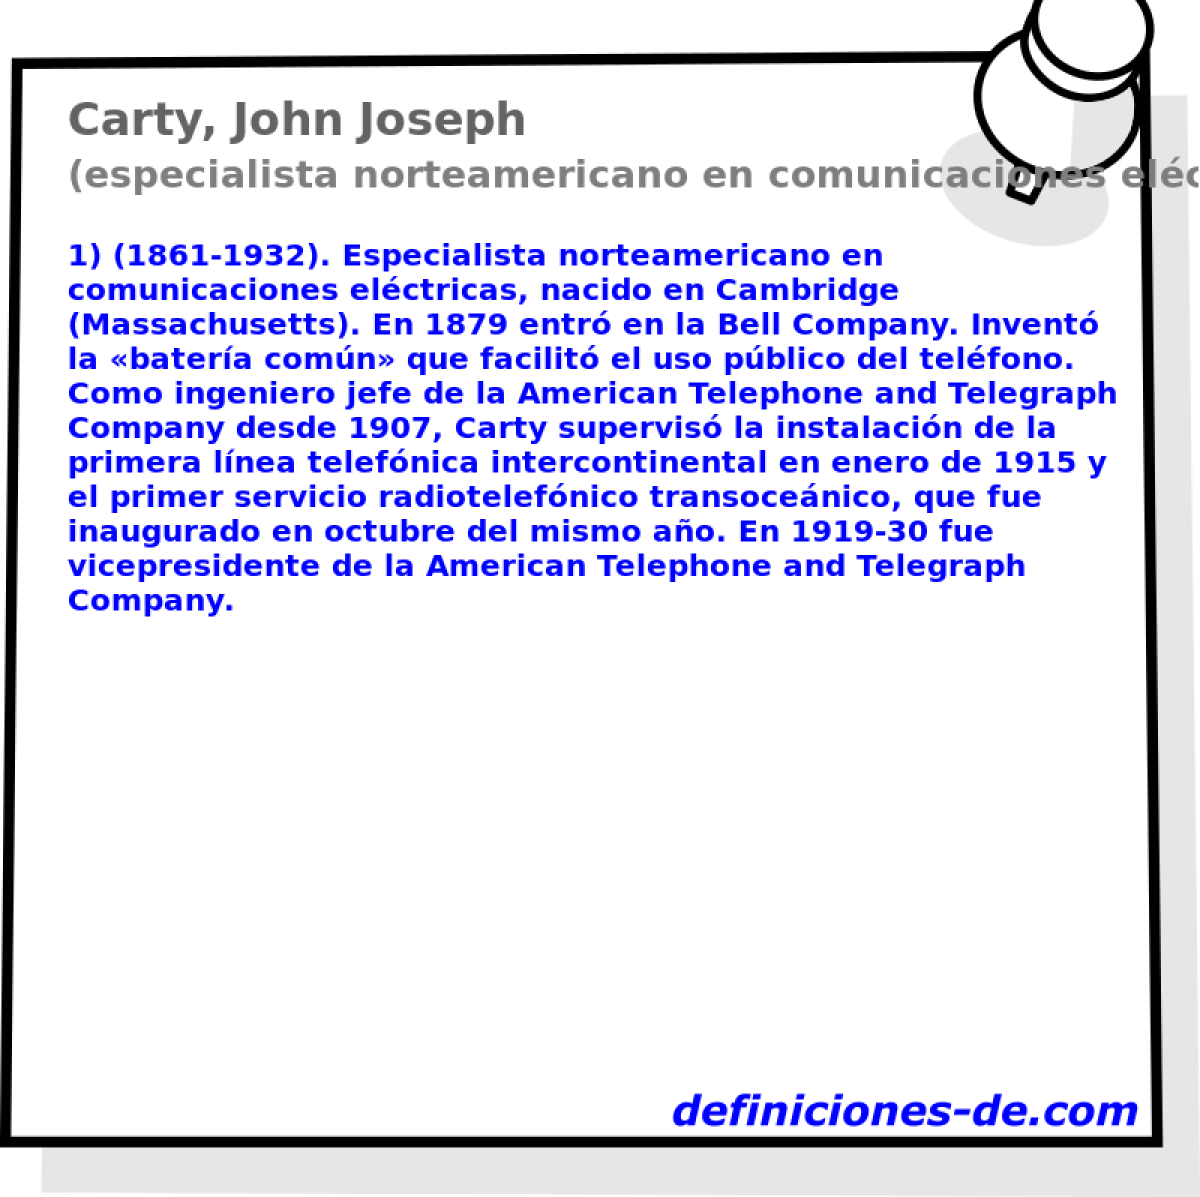 Carty, John Joseph (especialista norteamericano en comunicaciones elctricas)